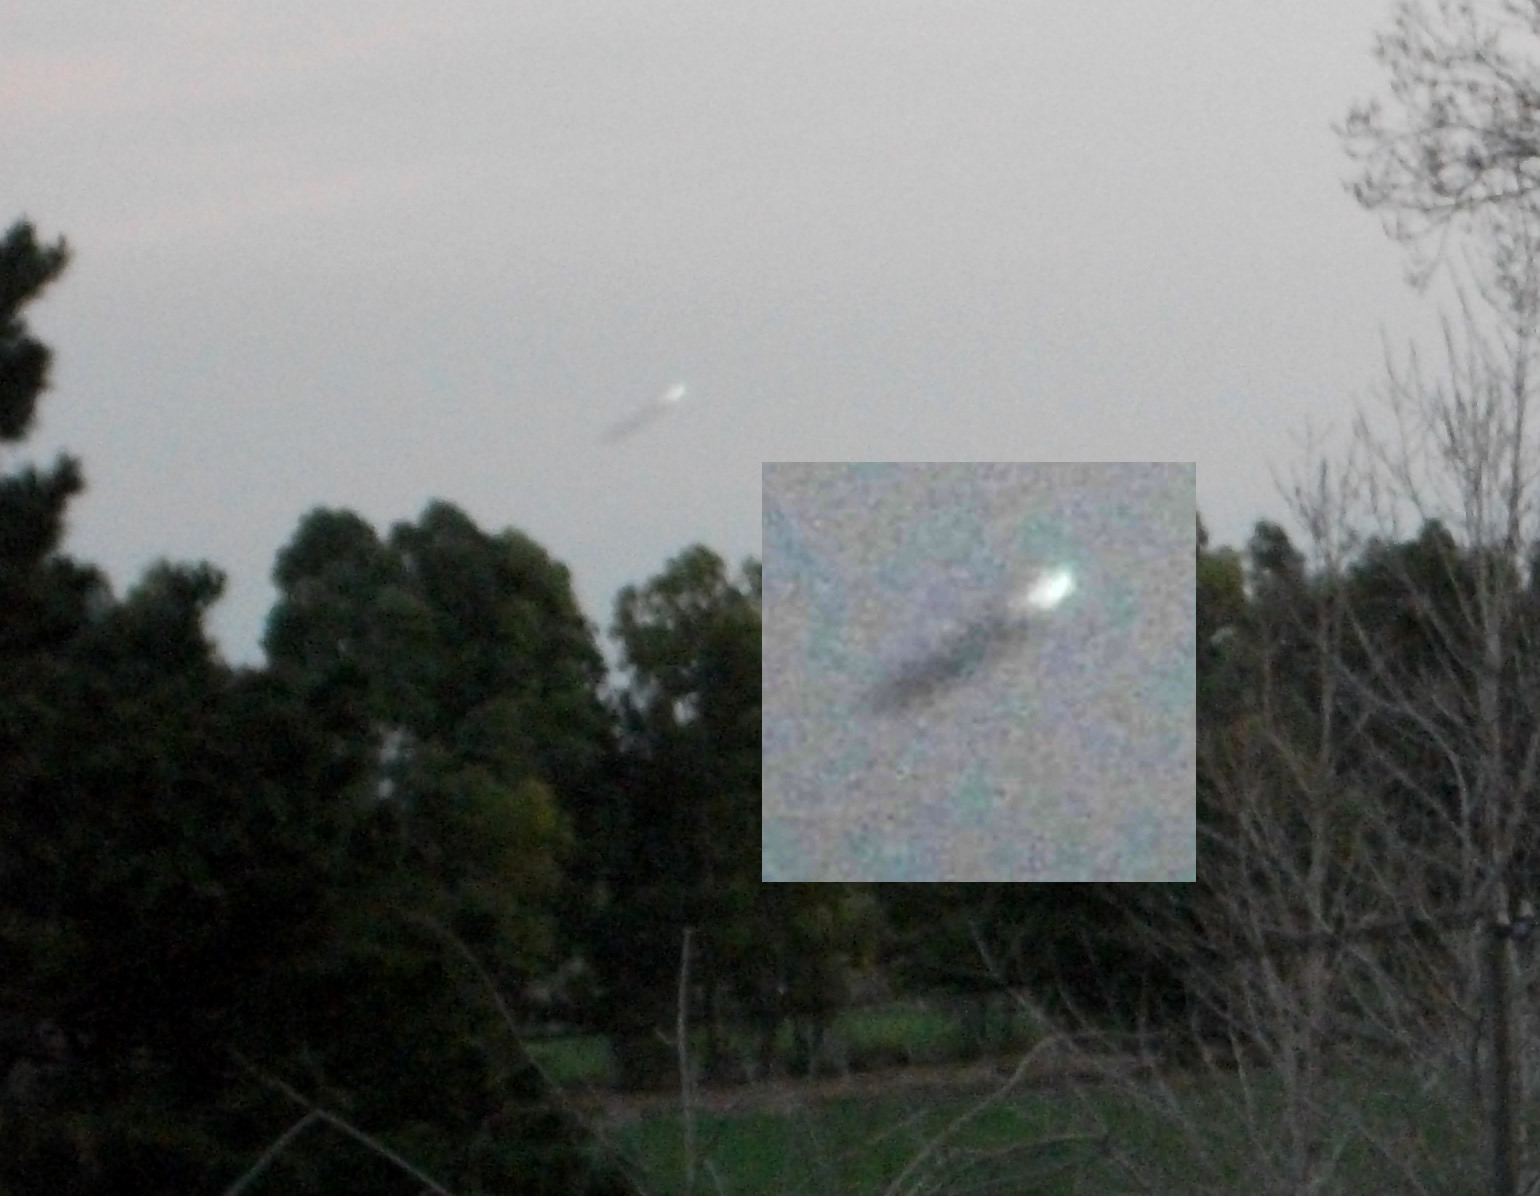 Ampliación de imagen capturada en Dpto. de Soriano, Uruguay. Puede verse un objeto que parece desplazarse a gran velocidad.